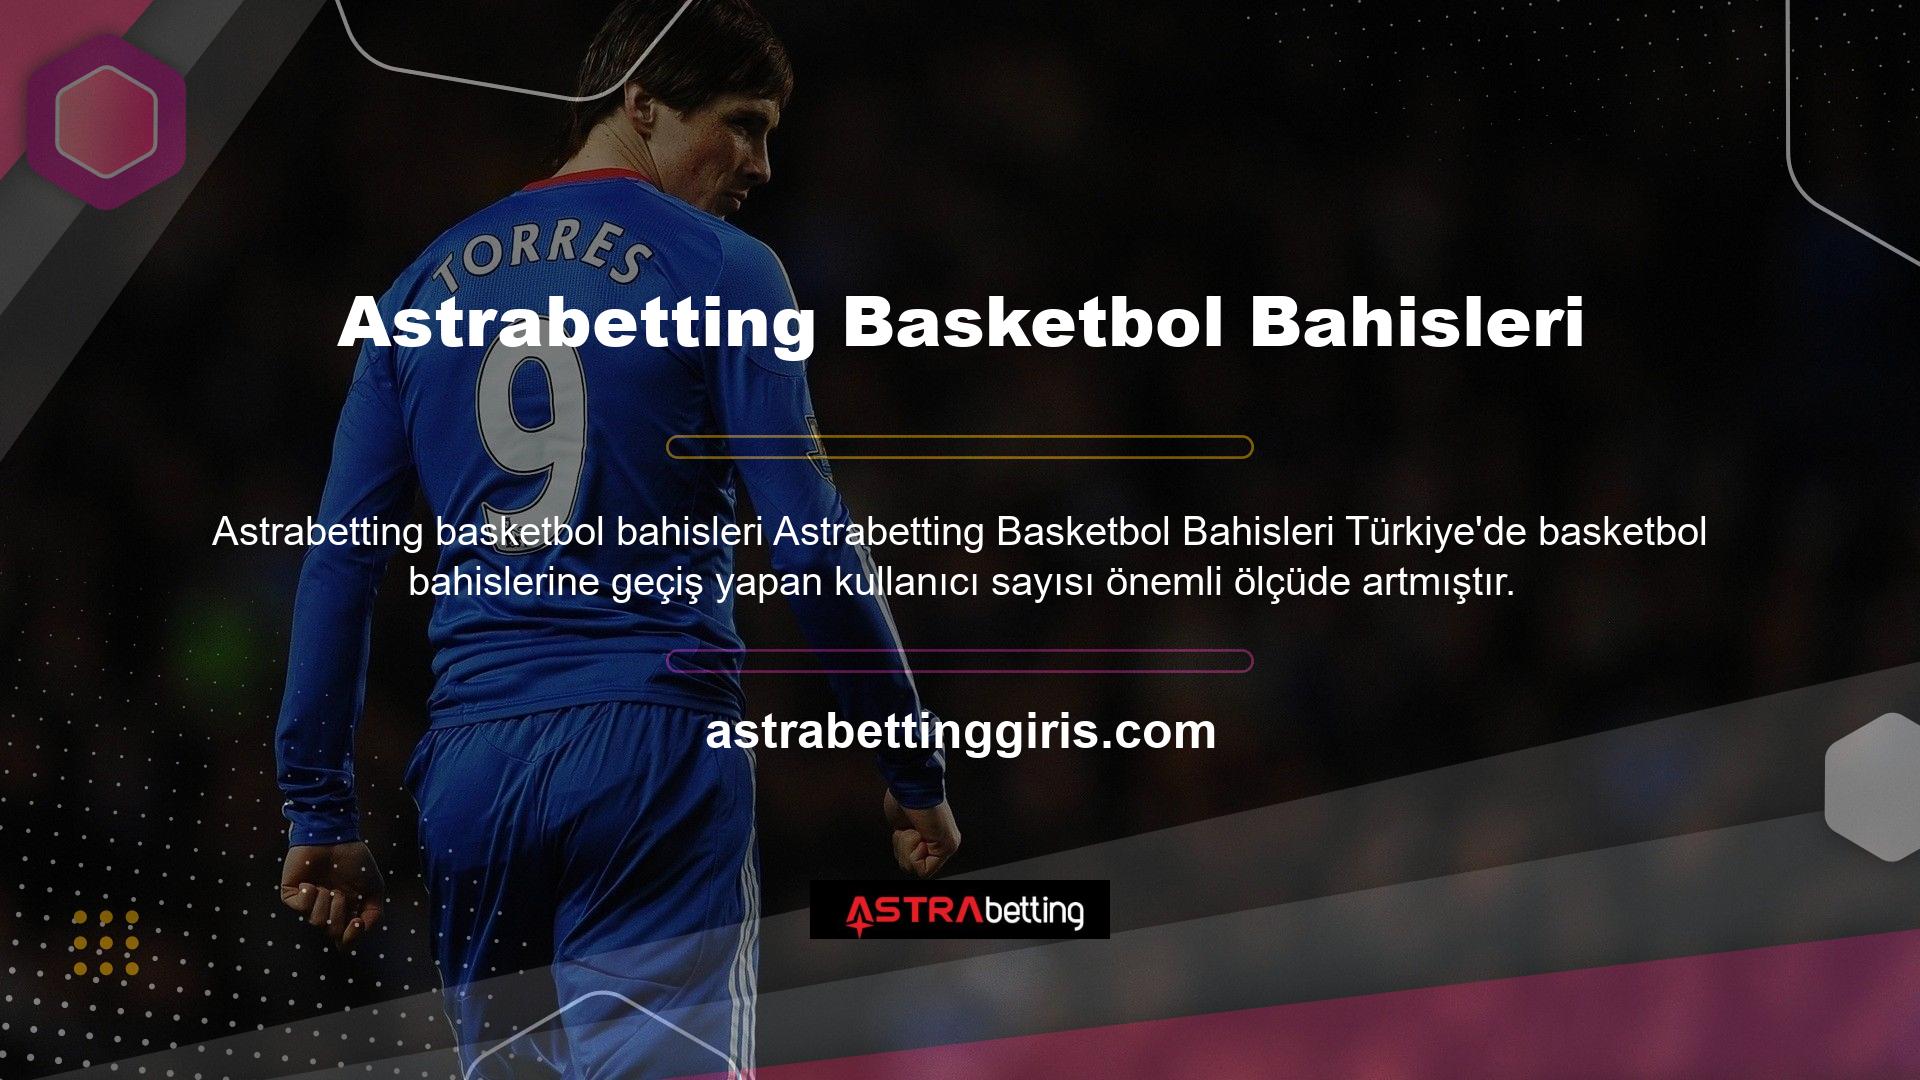 Astrabetting bahis sitesi, ilk olarak Türk oyuncular için oluşturulduğundan beri basketbol bahislerinde büyük ilerlemeler kaydetmiştir